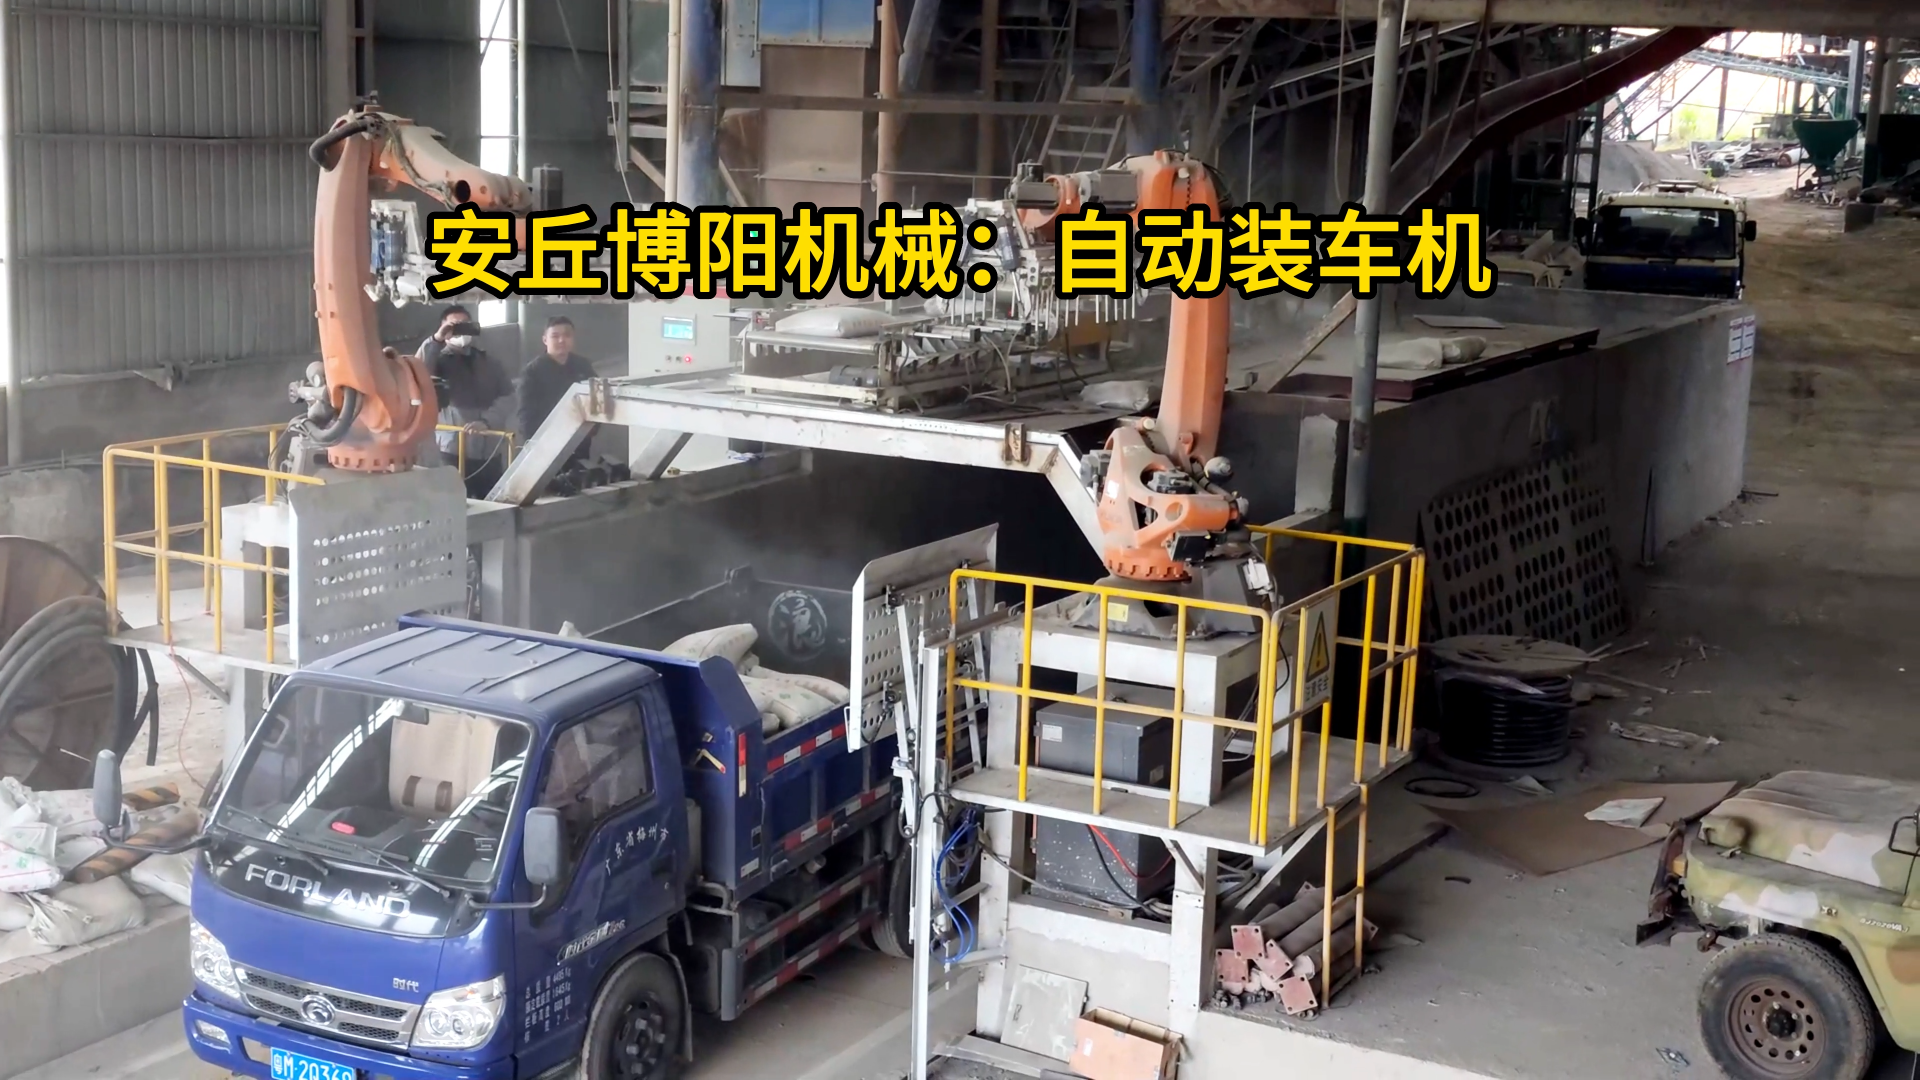 50kg水泥全自动装车机器人 水泥自动装车机械手非标定制